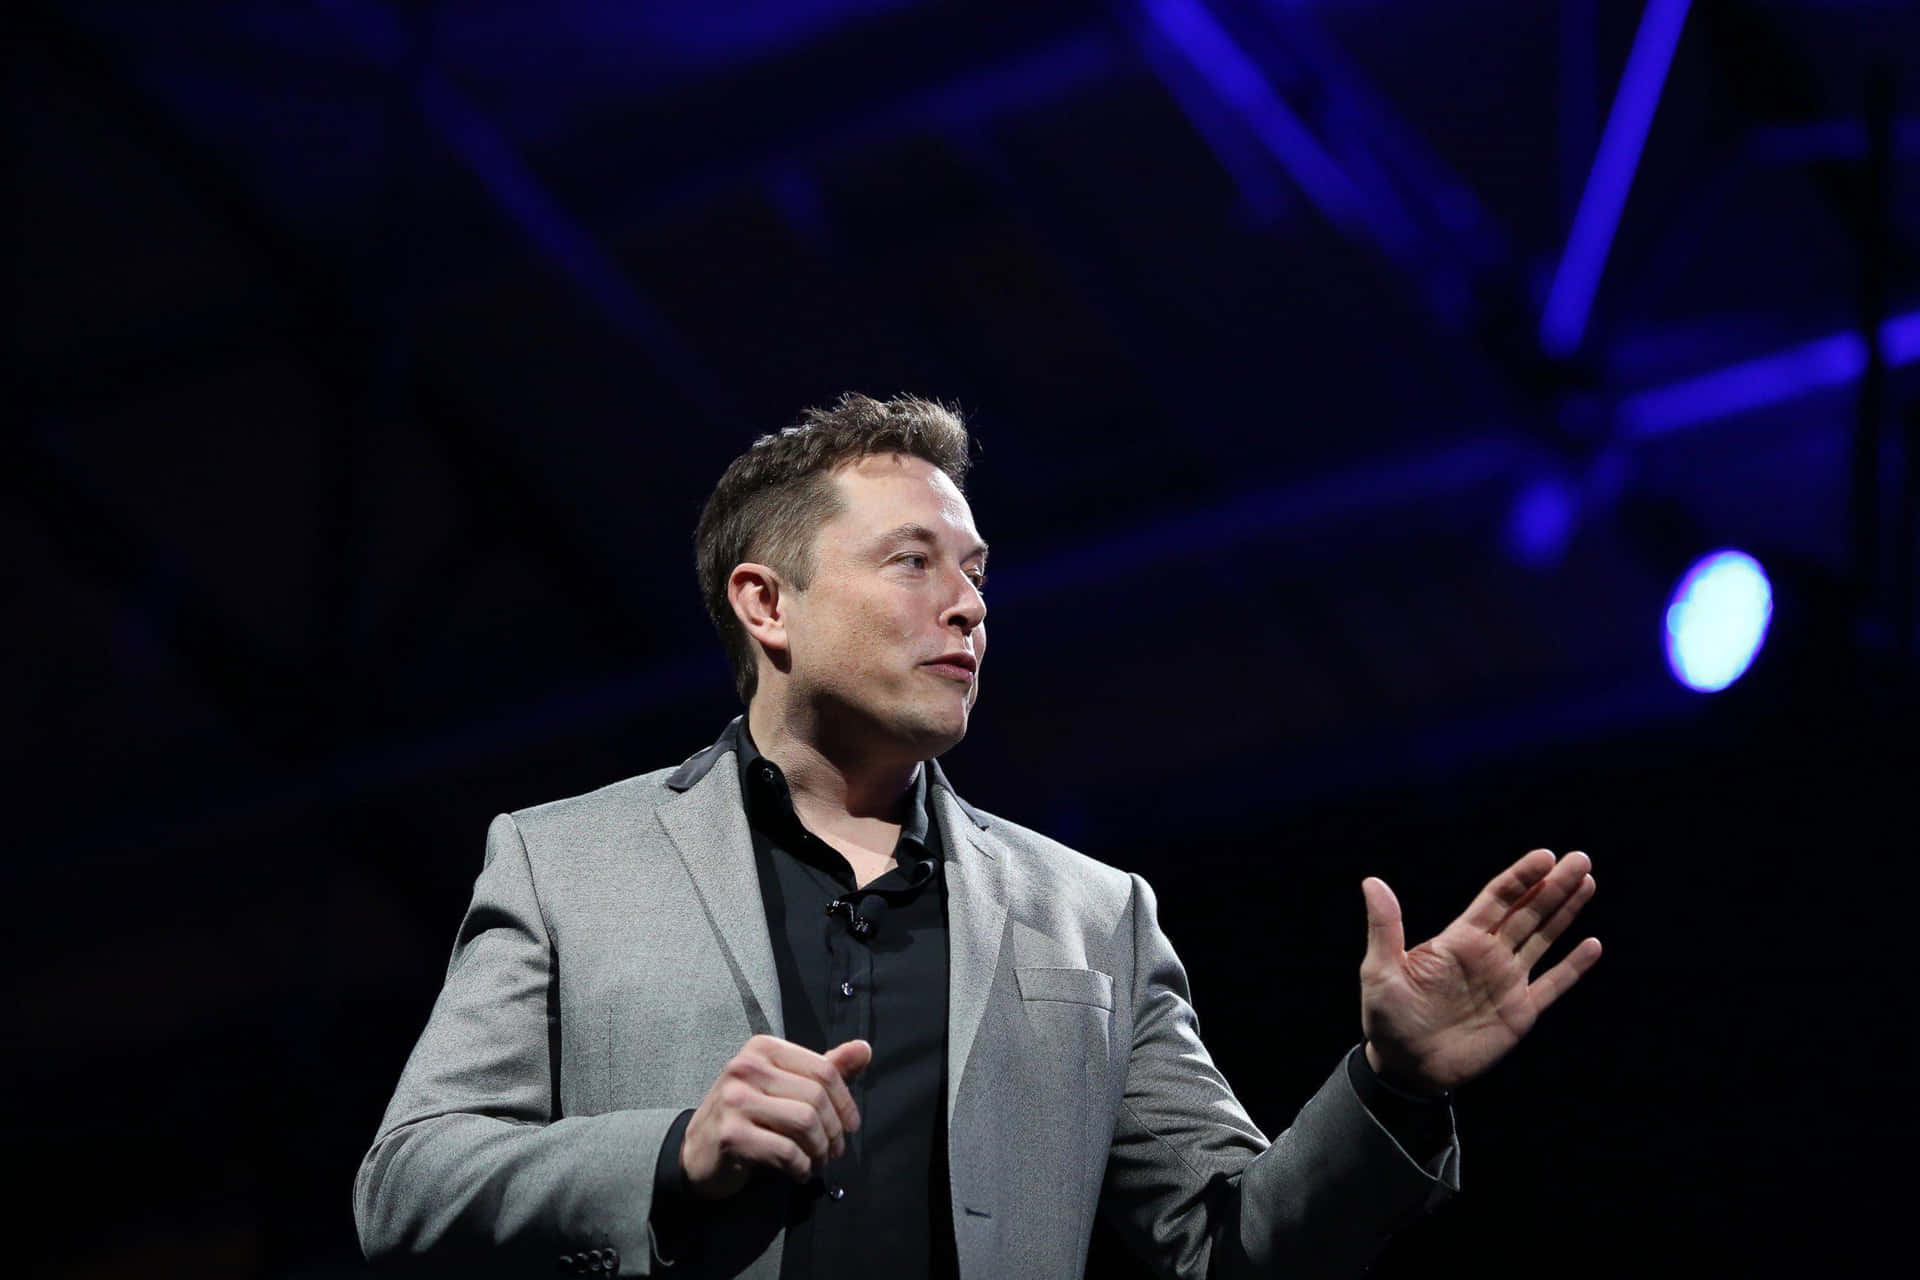 Imagende Elon Musk, Inventor Visionario Y Empresario.